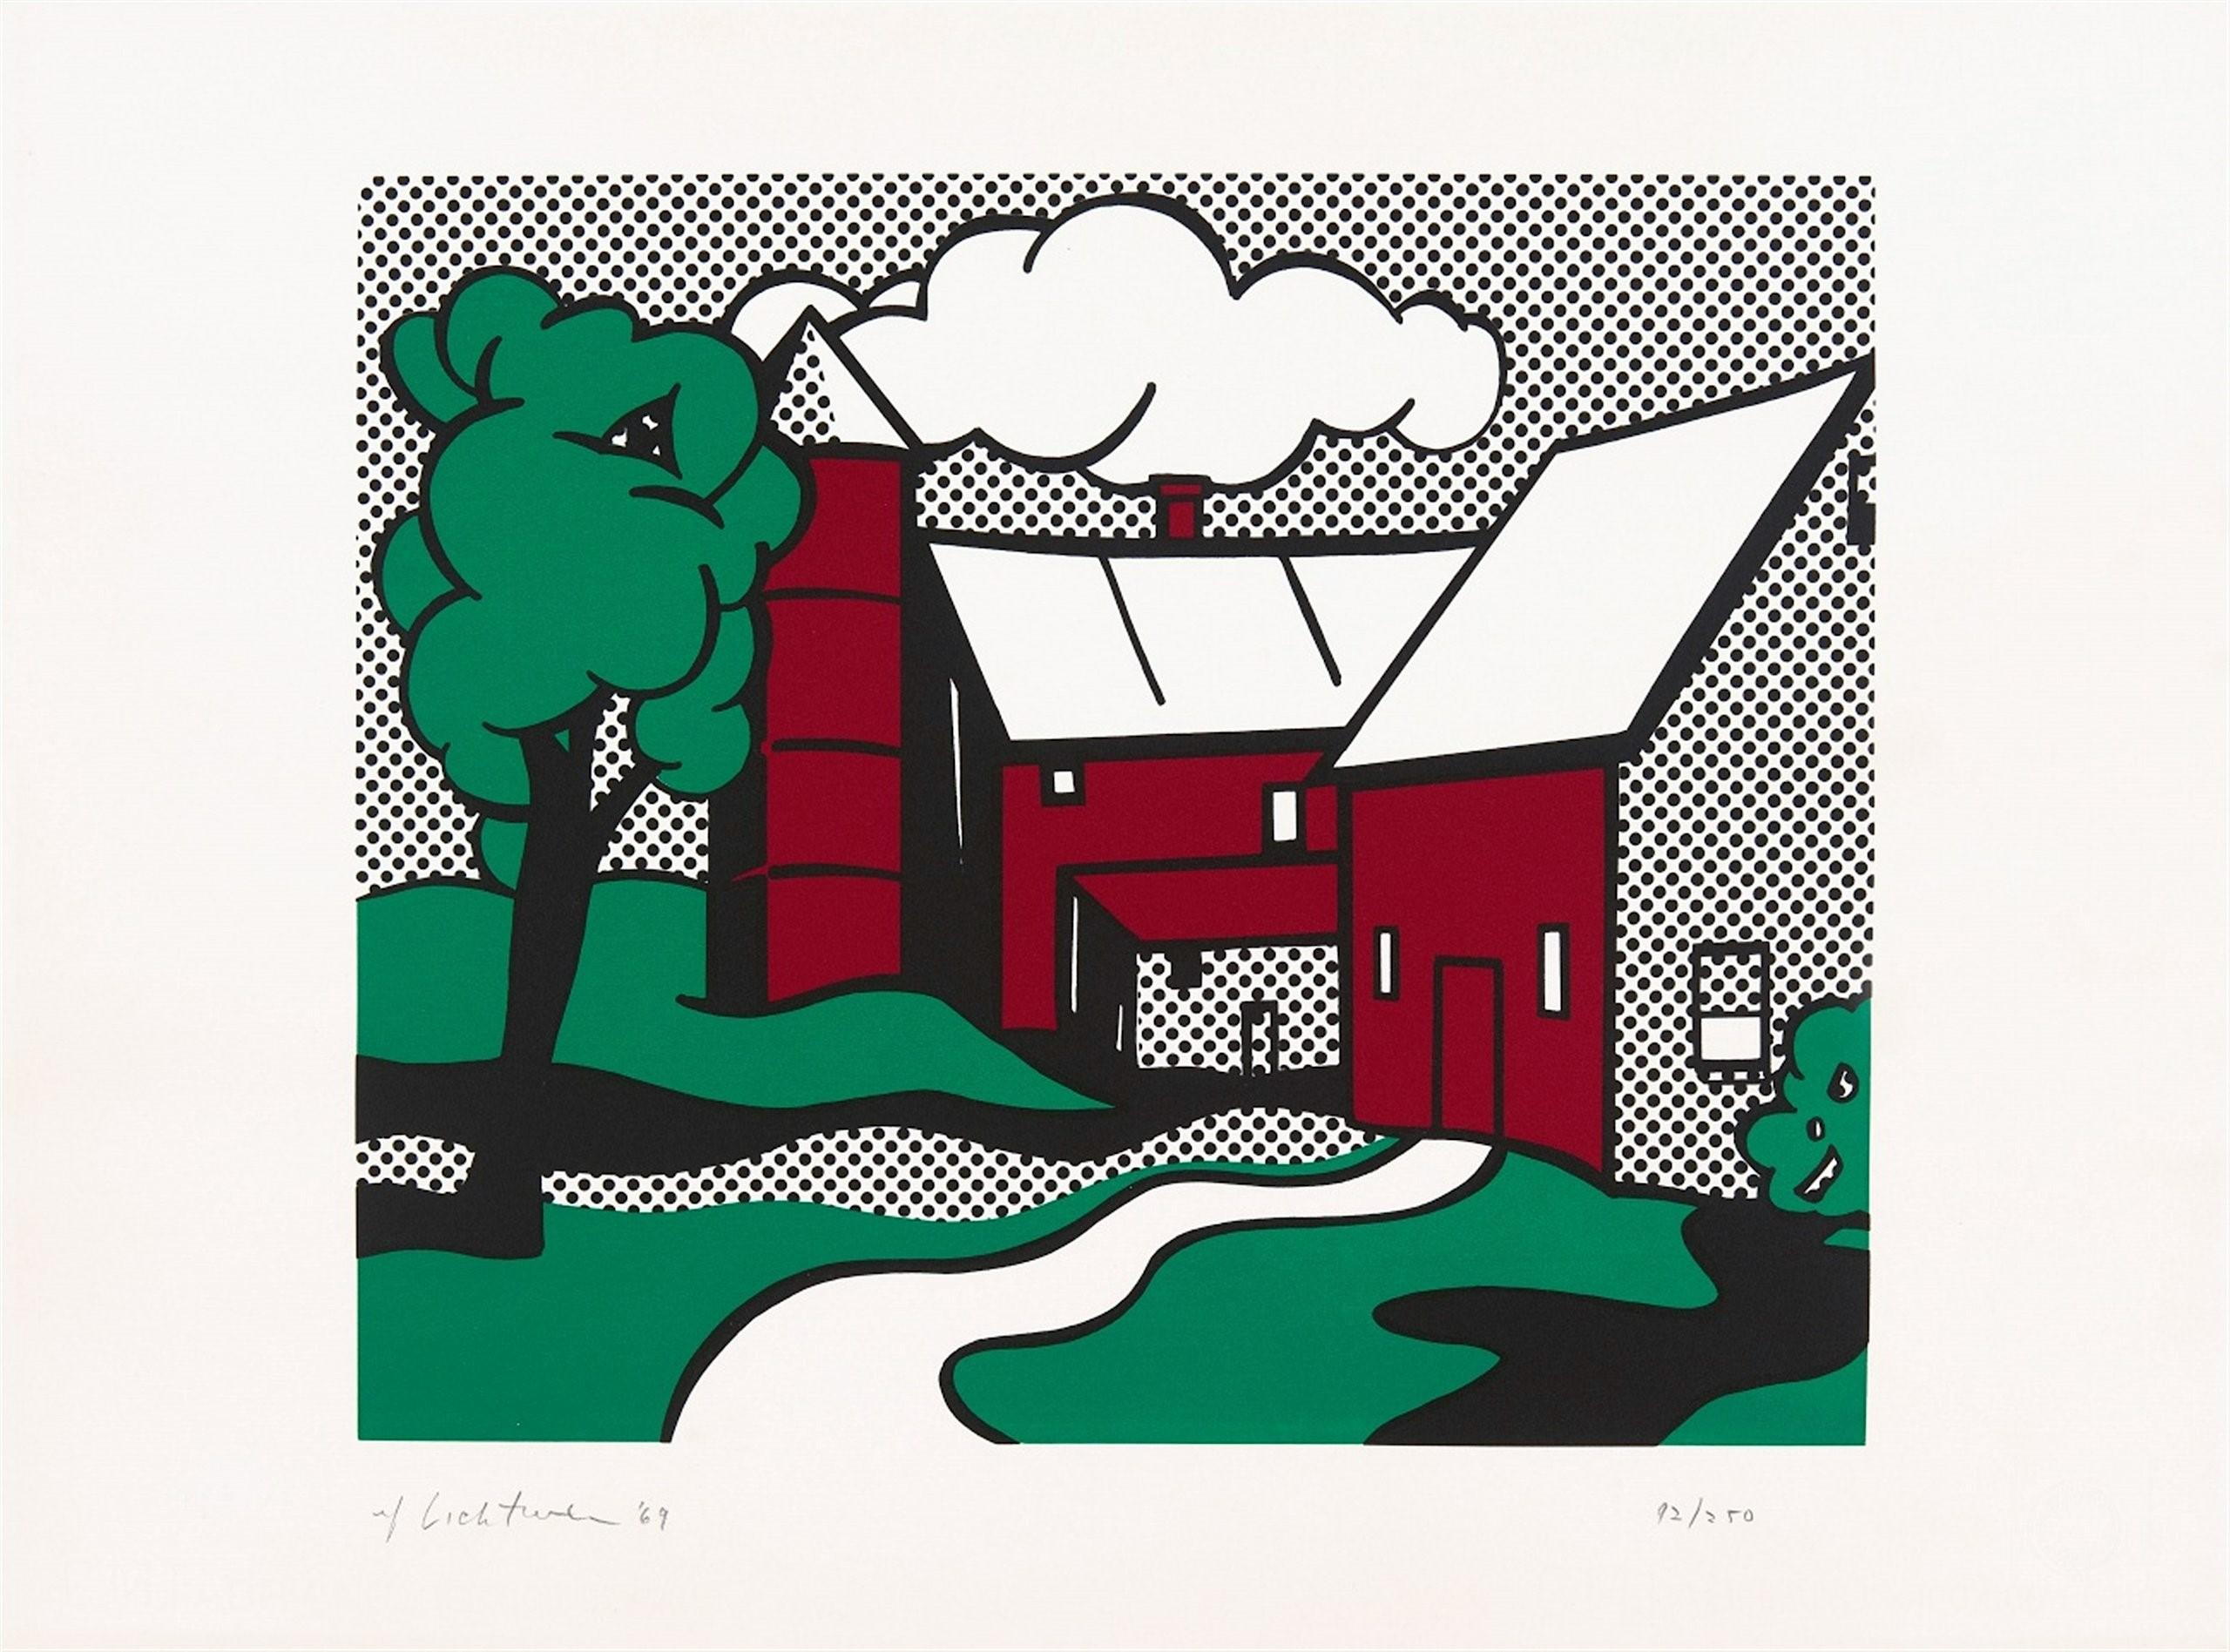 Red Barn - Print by Roy Lichtenstein